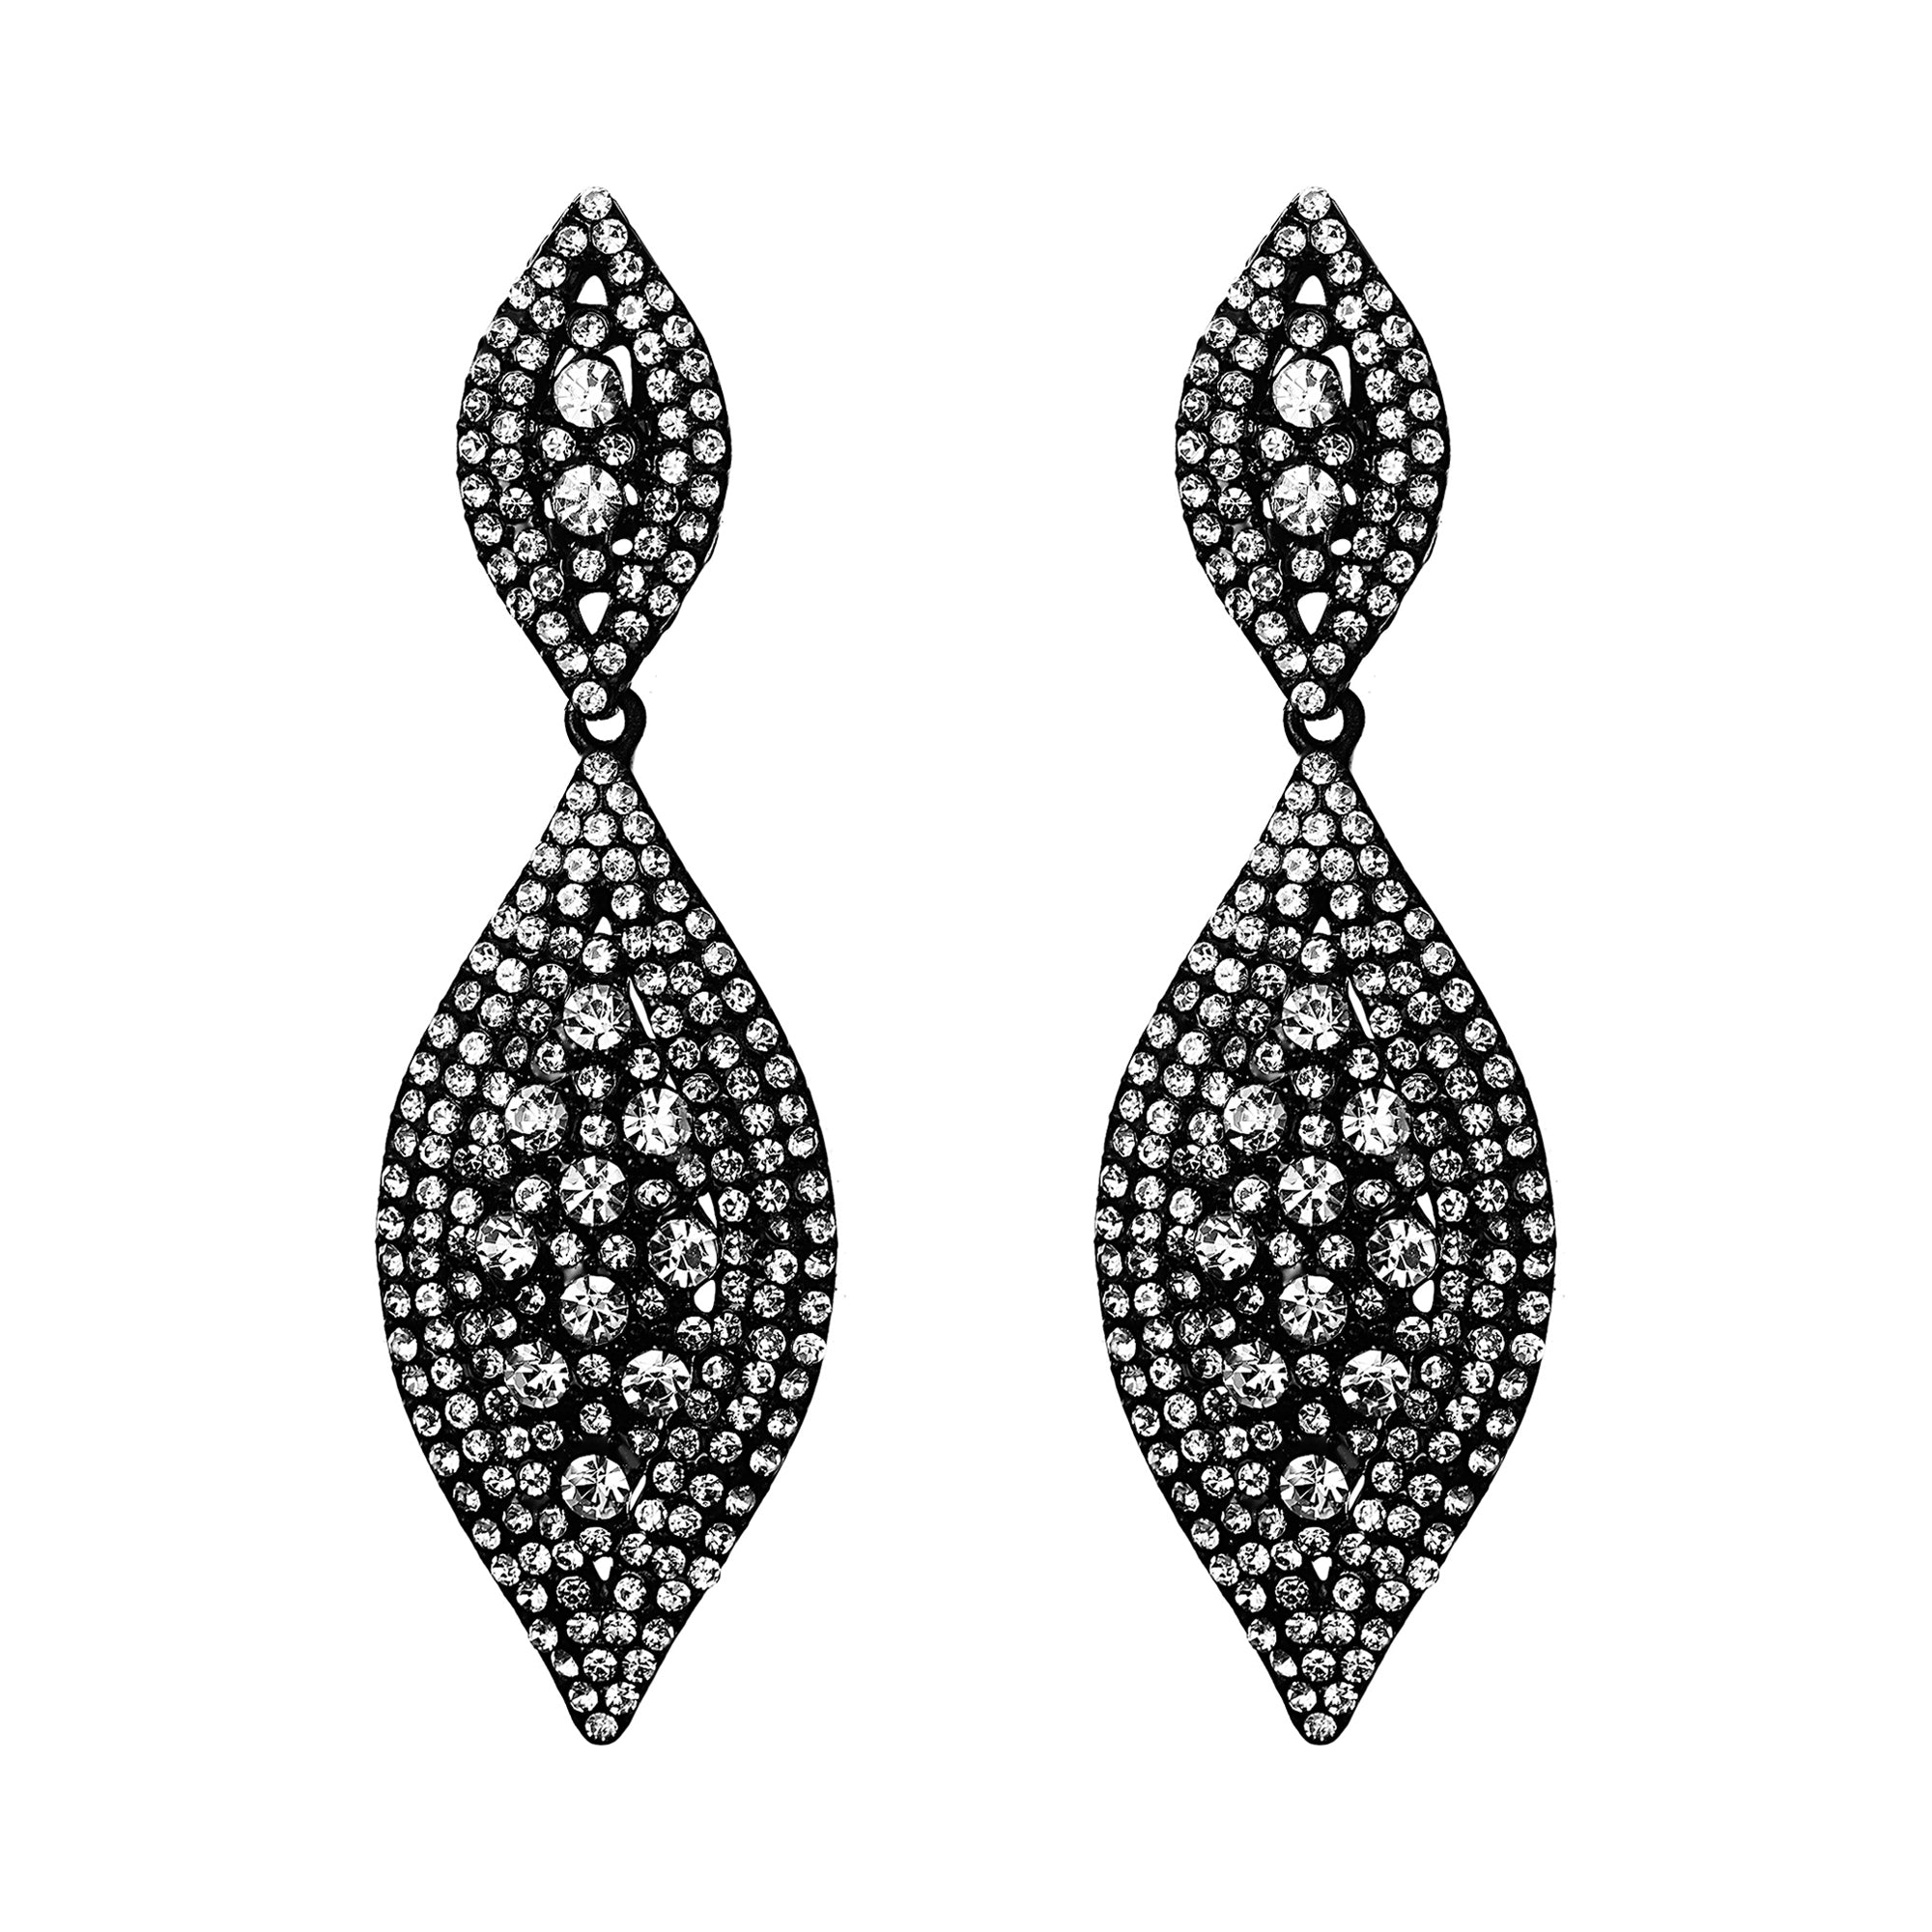 Teardrop Crystal Dangle Earrings